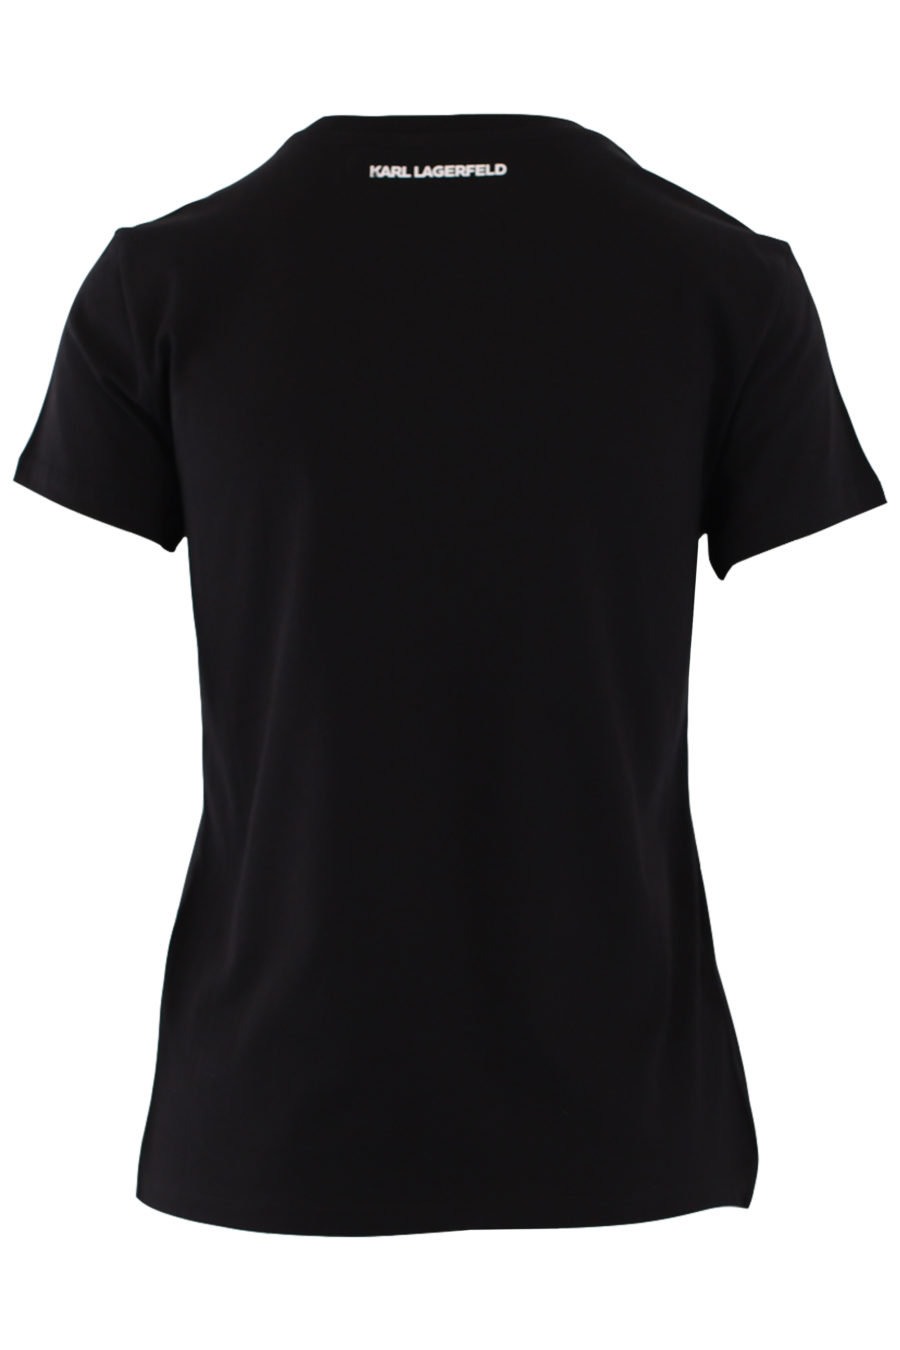 Camiseta negra con logo pequeño en strass - IMG 9022 1